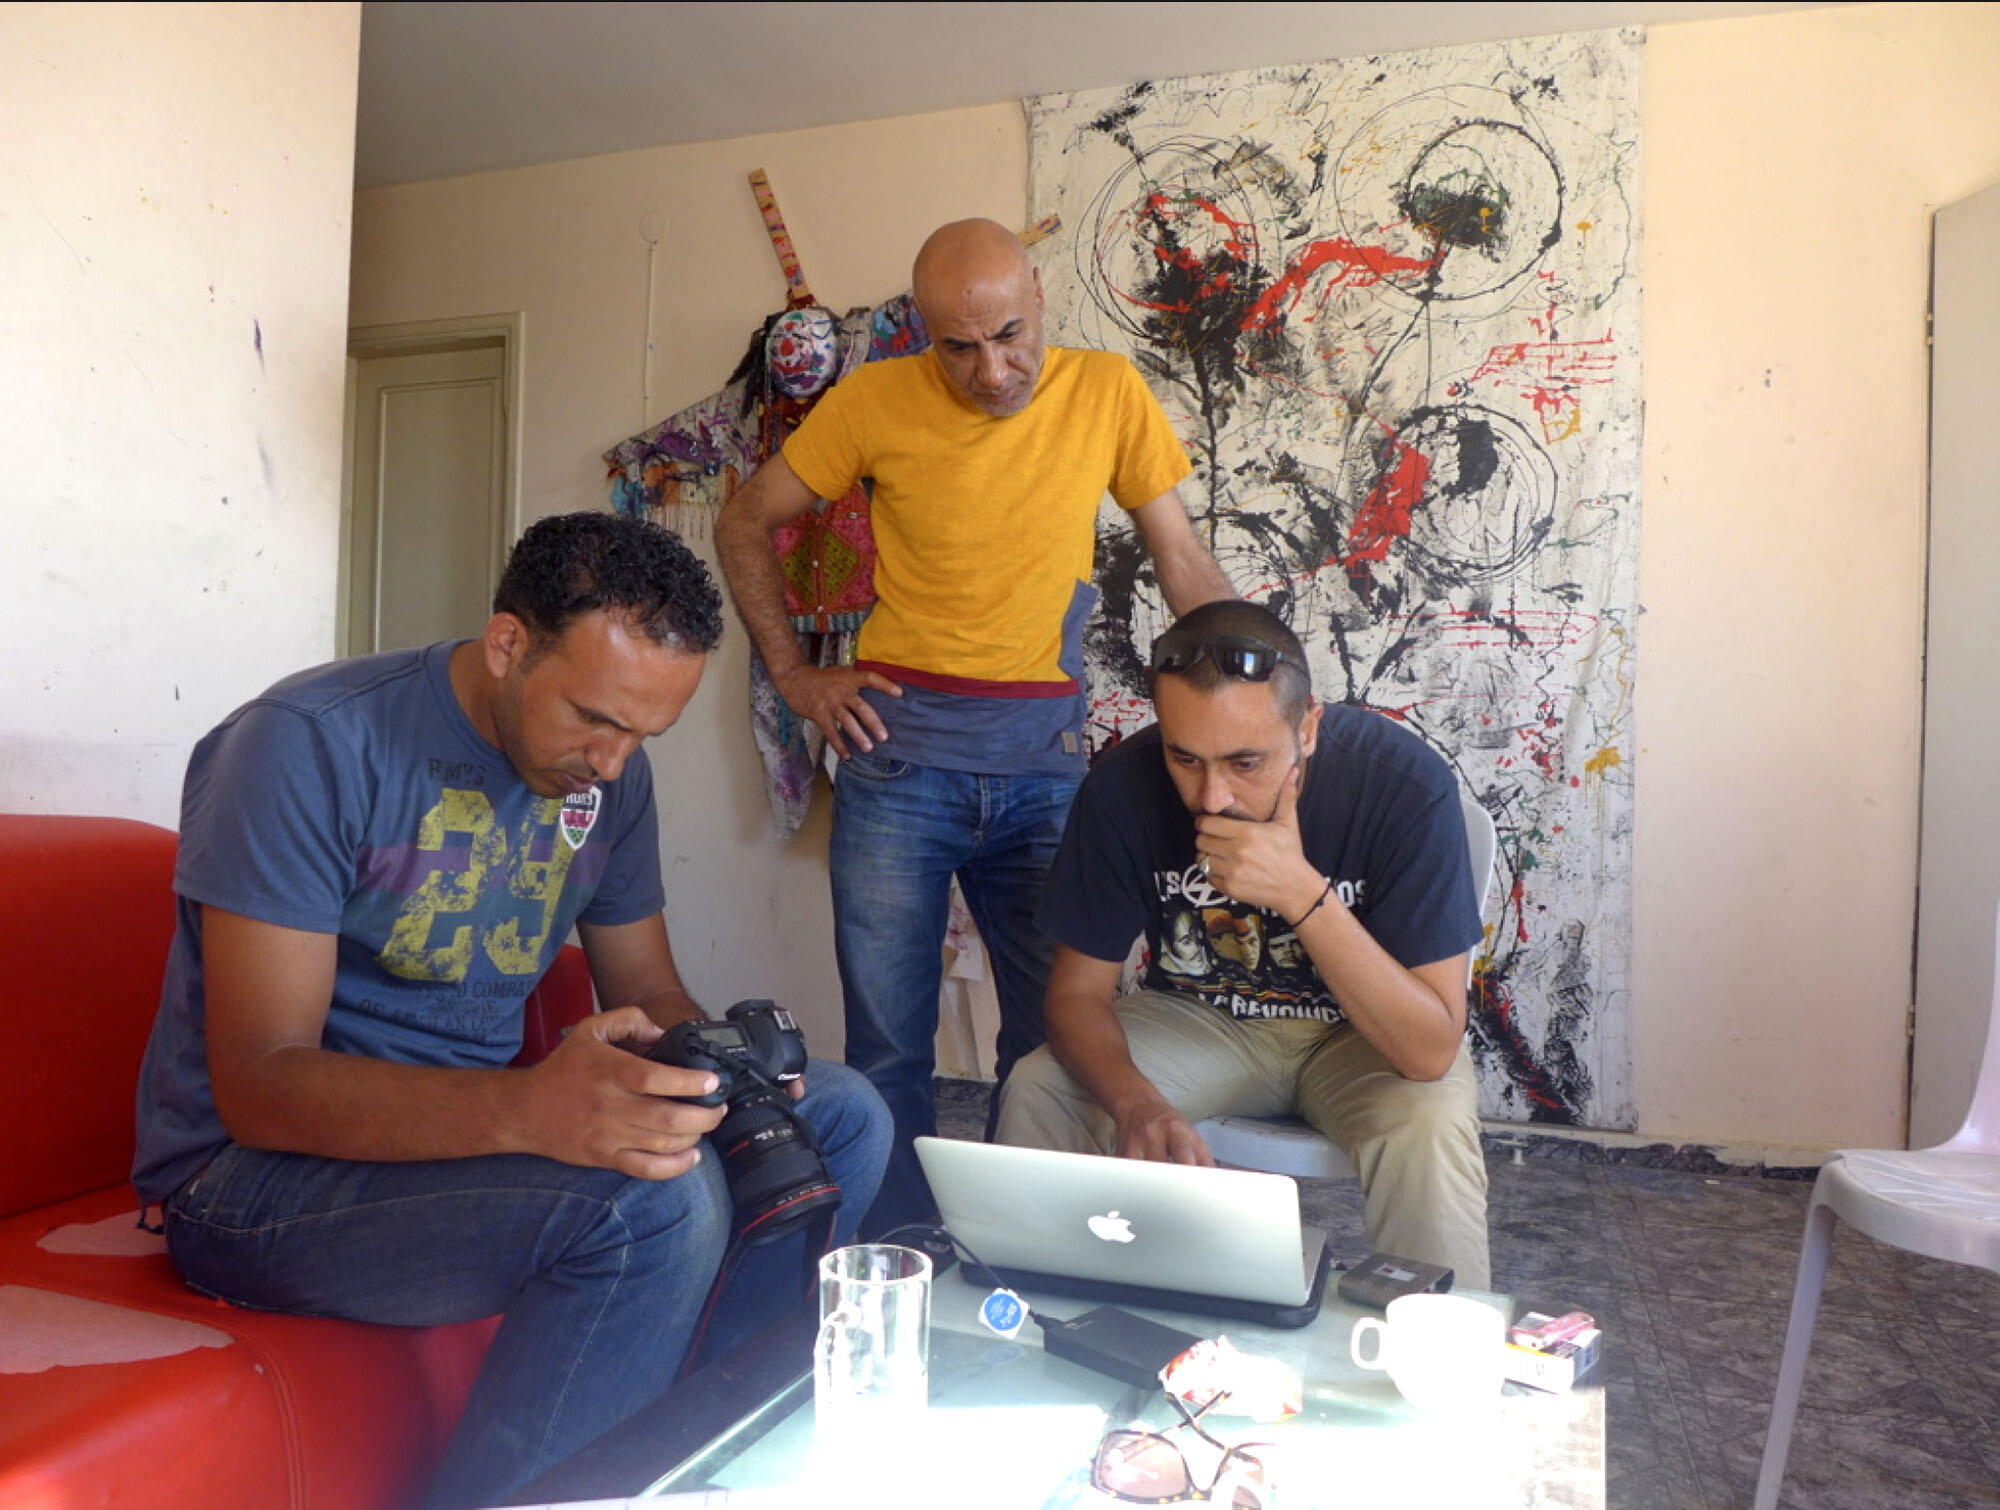 Reunión de producción con Khalil, Ibrahim y Emad, productor y director de fotografía respectivamente.